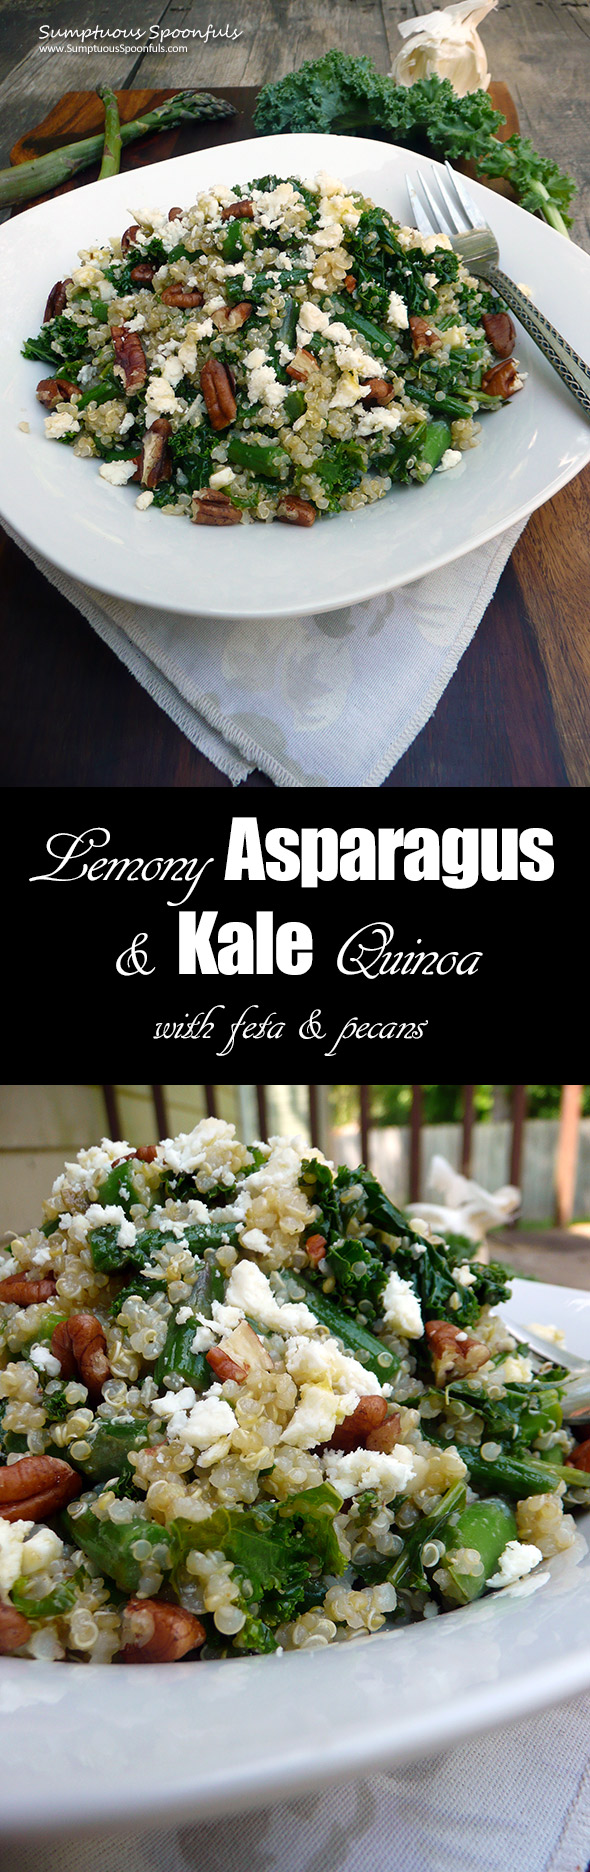 Lemony Asparagus & Kale Quinoa with Feta & Pecans ~ Sumptuous Spoonfuls #quinoa #asparagus #recipe